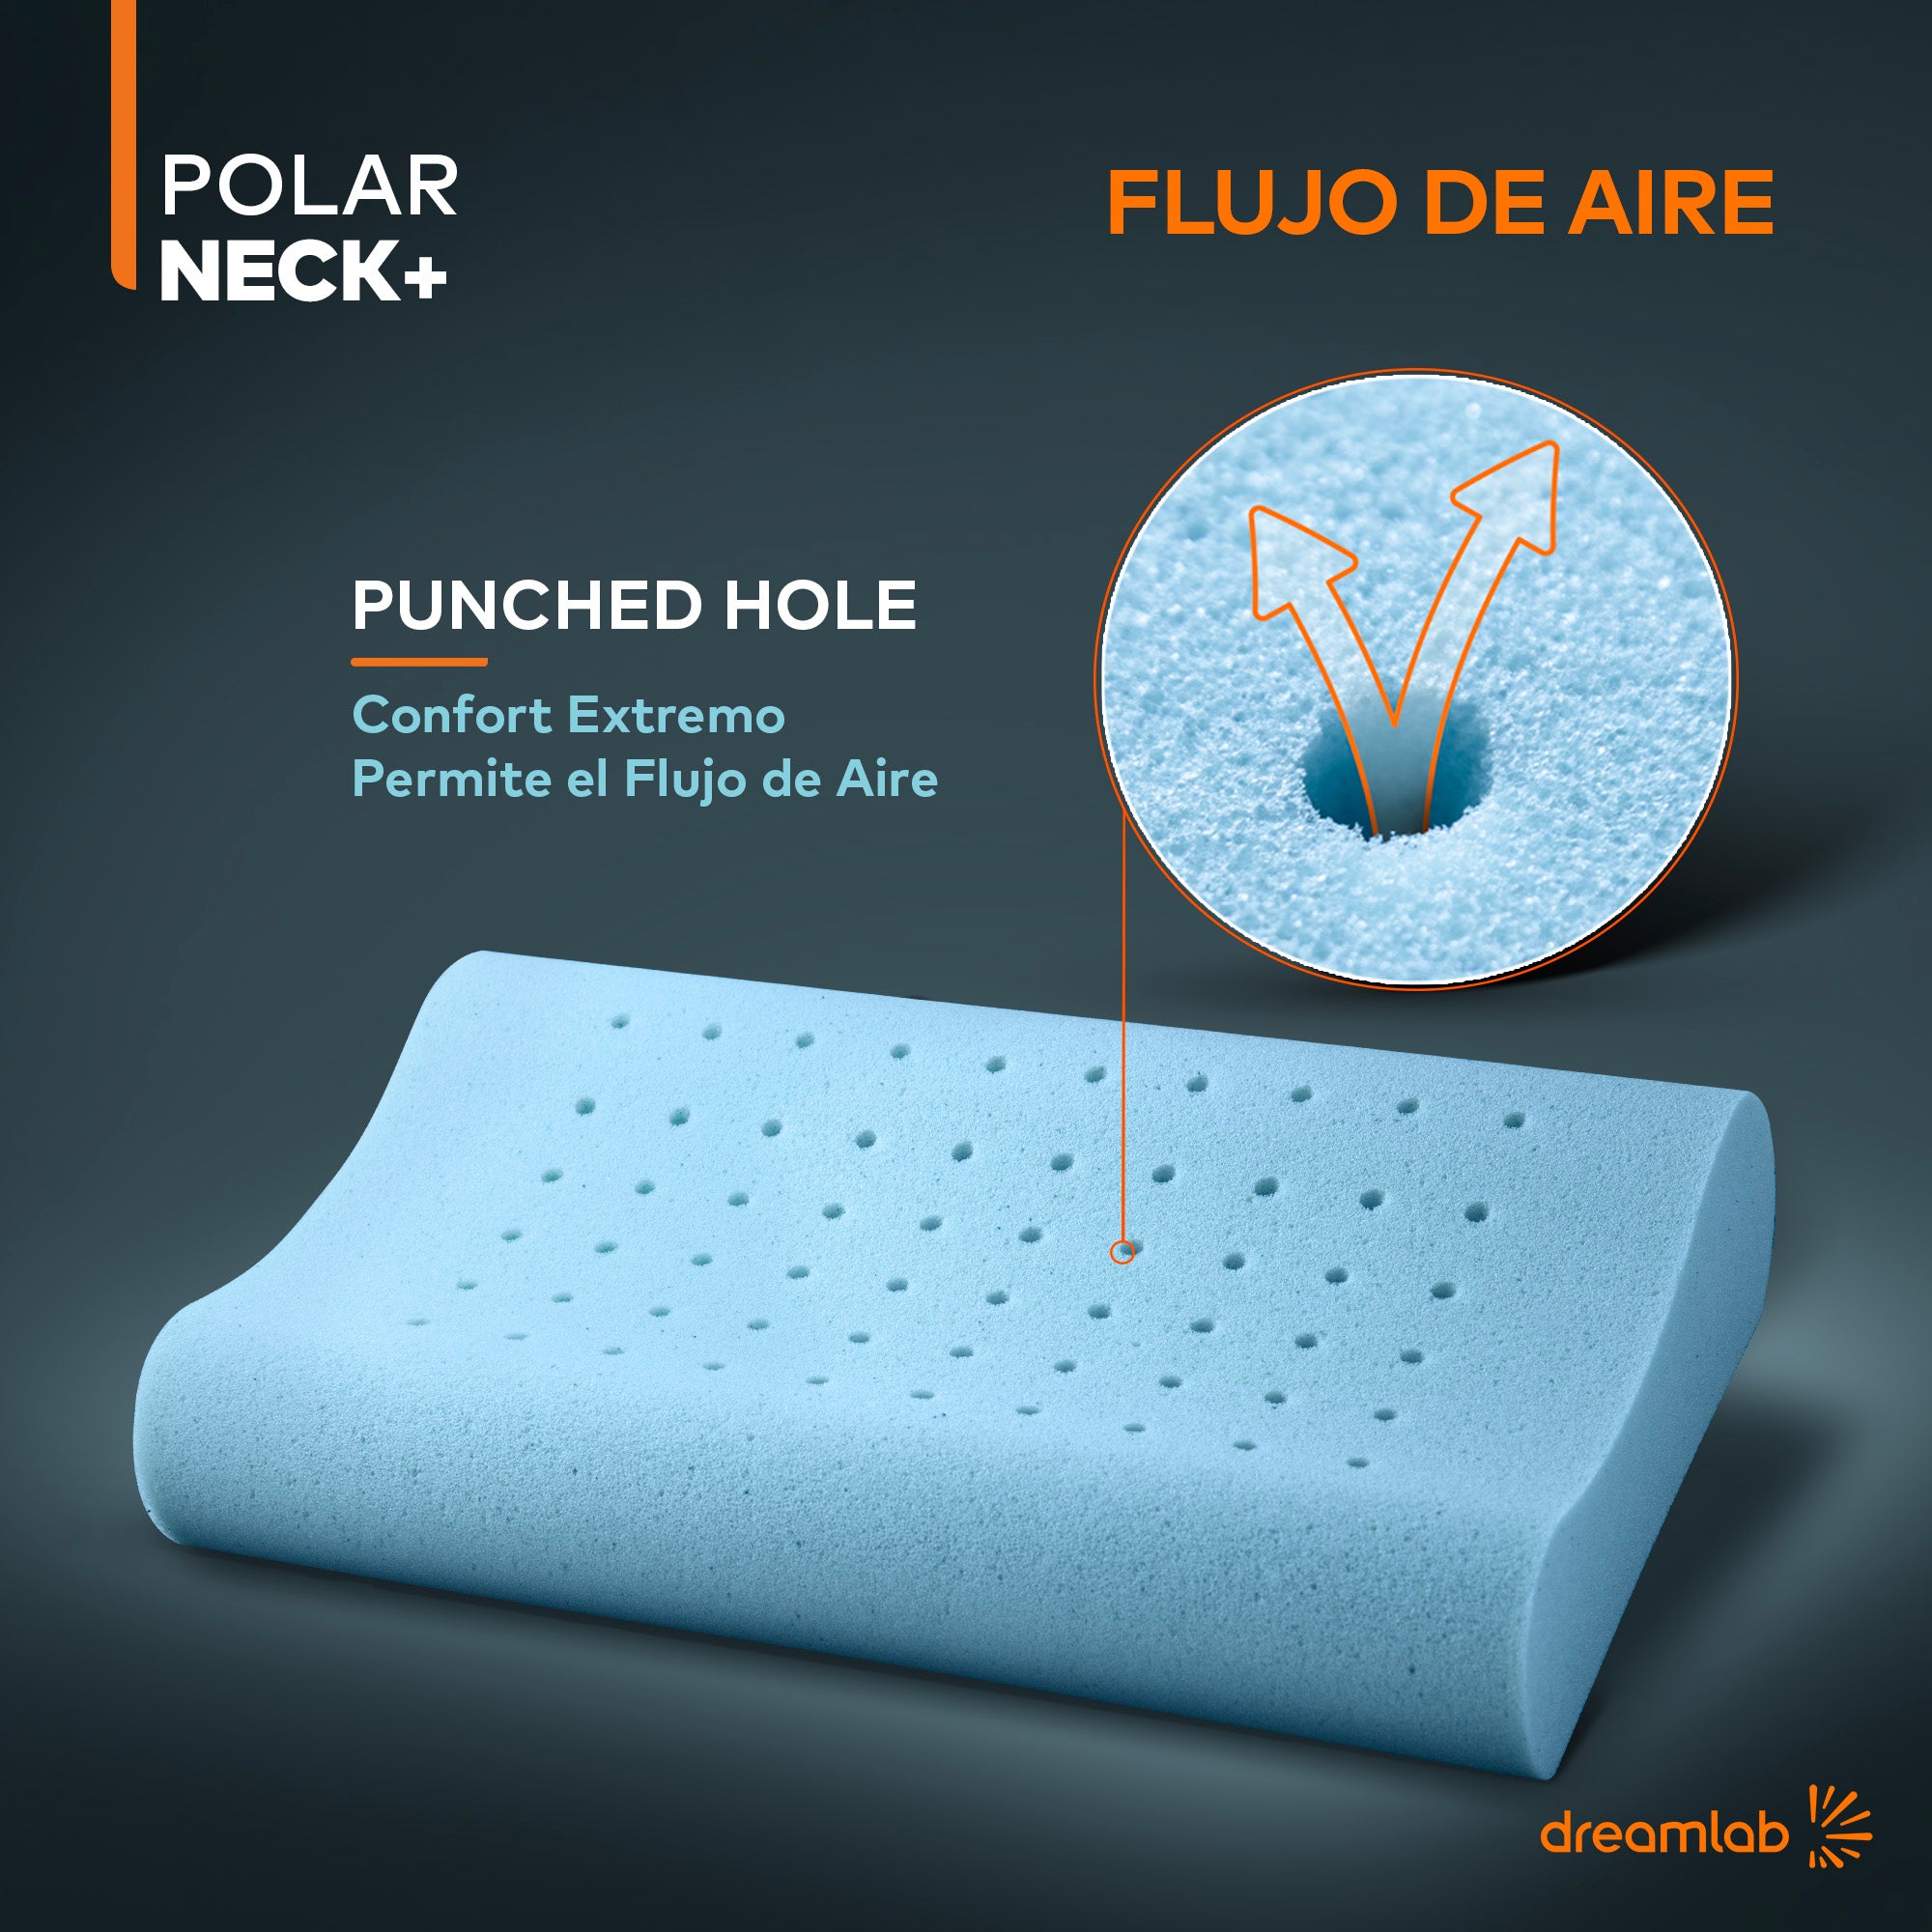 Almohada Polar Neck+ 2 pack prueba